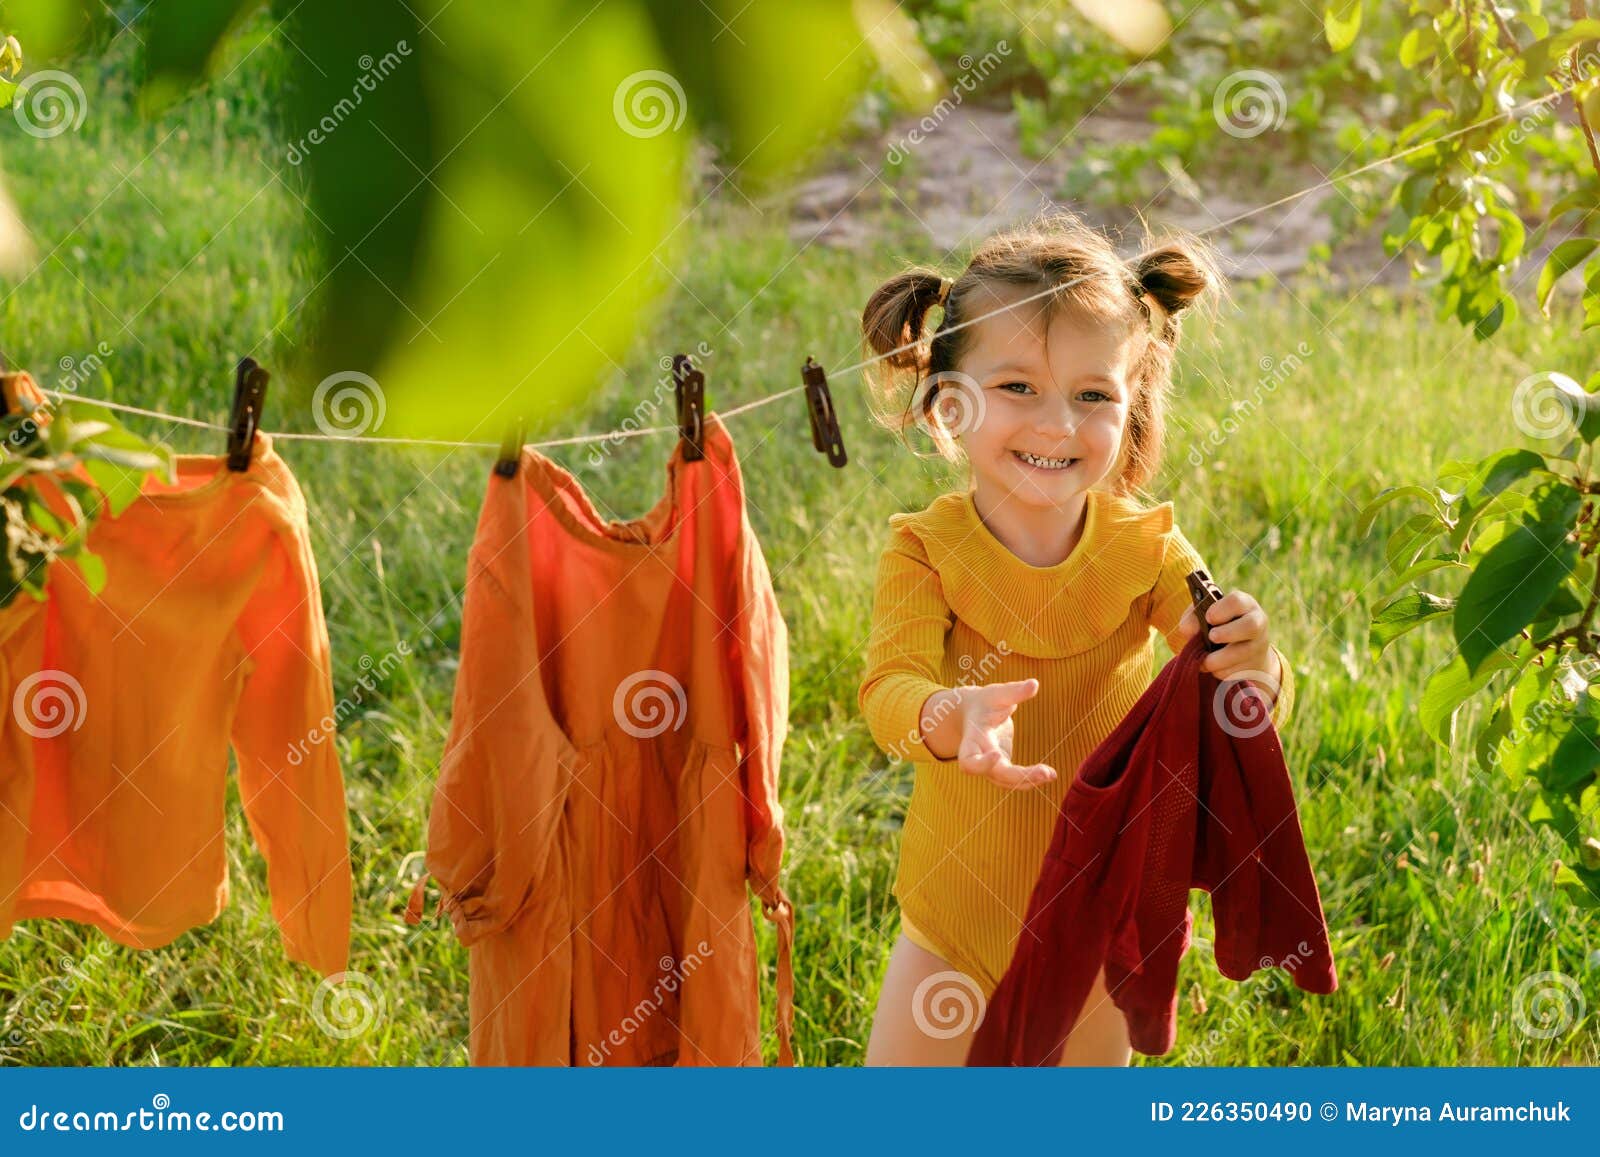 La Ropa De Los Niños Se Está Secando En El Jardín Al Aire Libre Foto de  archivo - Imagen de ropas, clothespin: 226350490